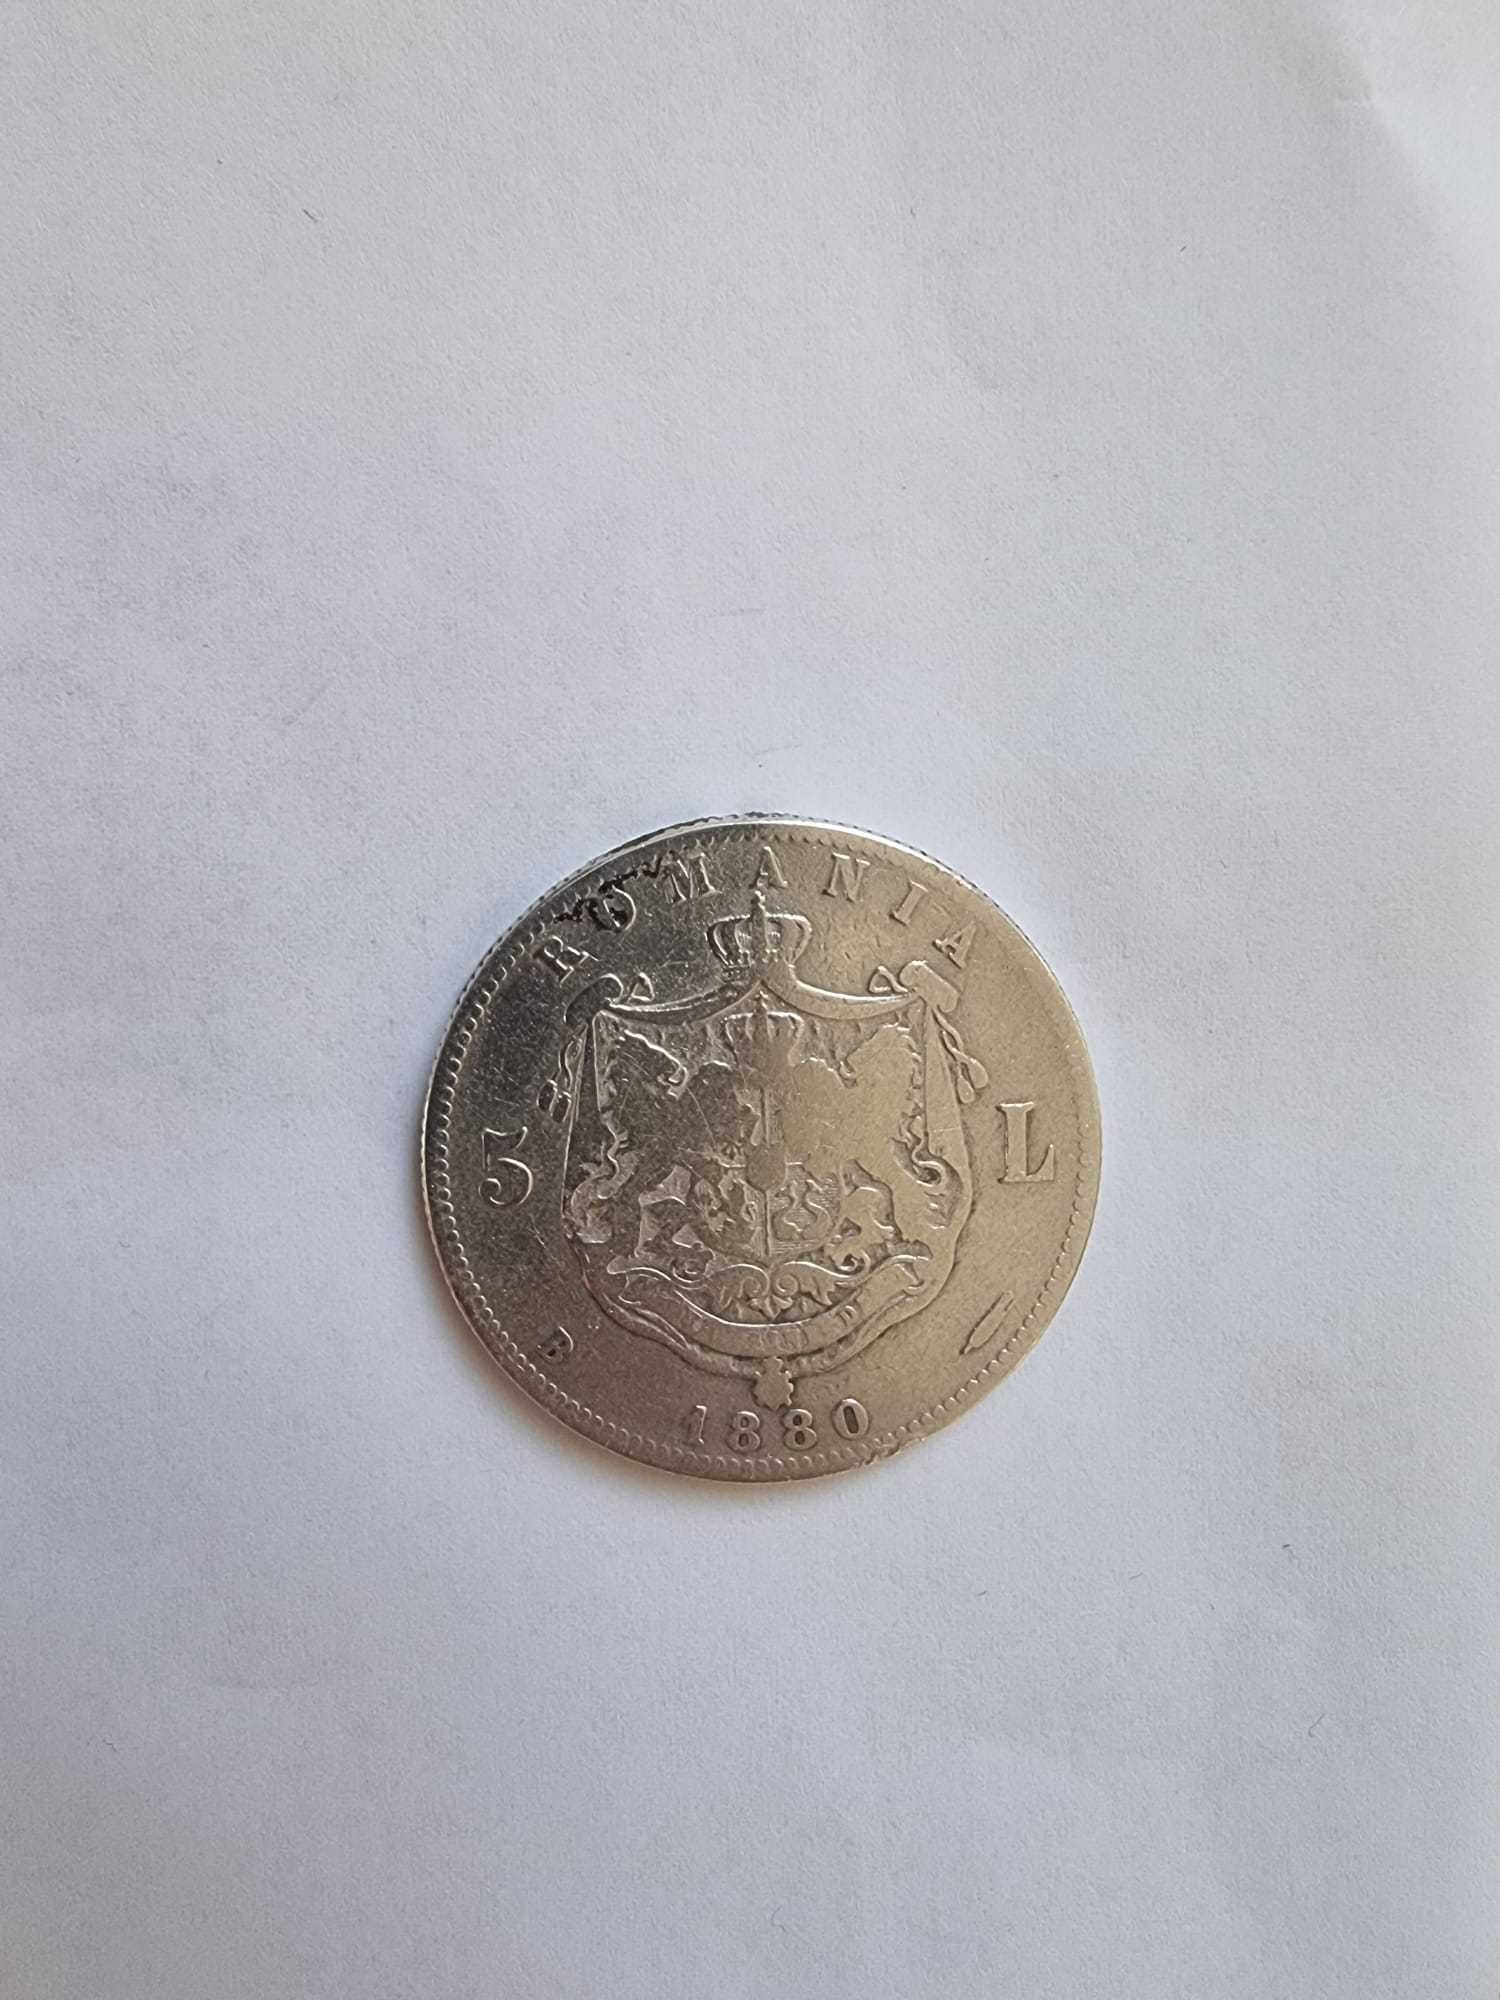 Vând moneda rara de colectie de 5 lei 1880 cu Carol I (din argint)